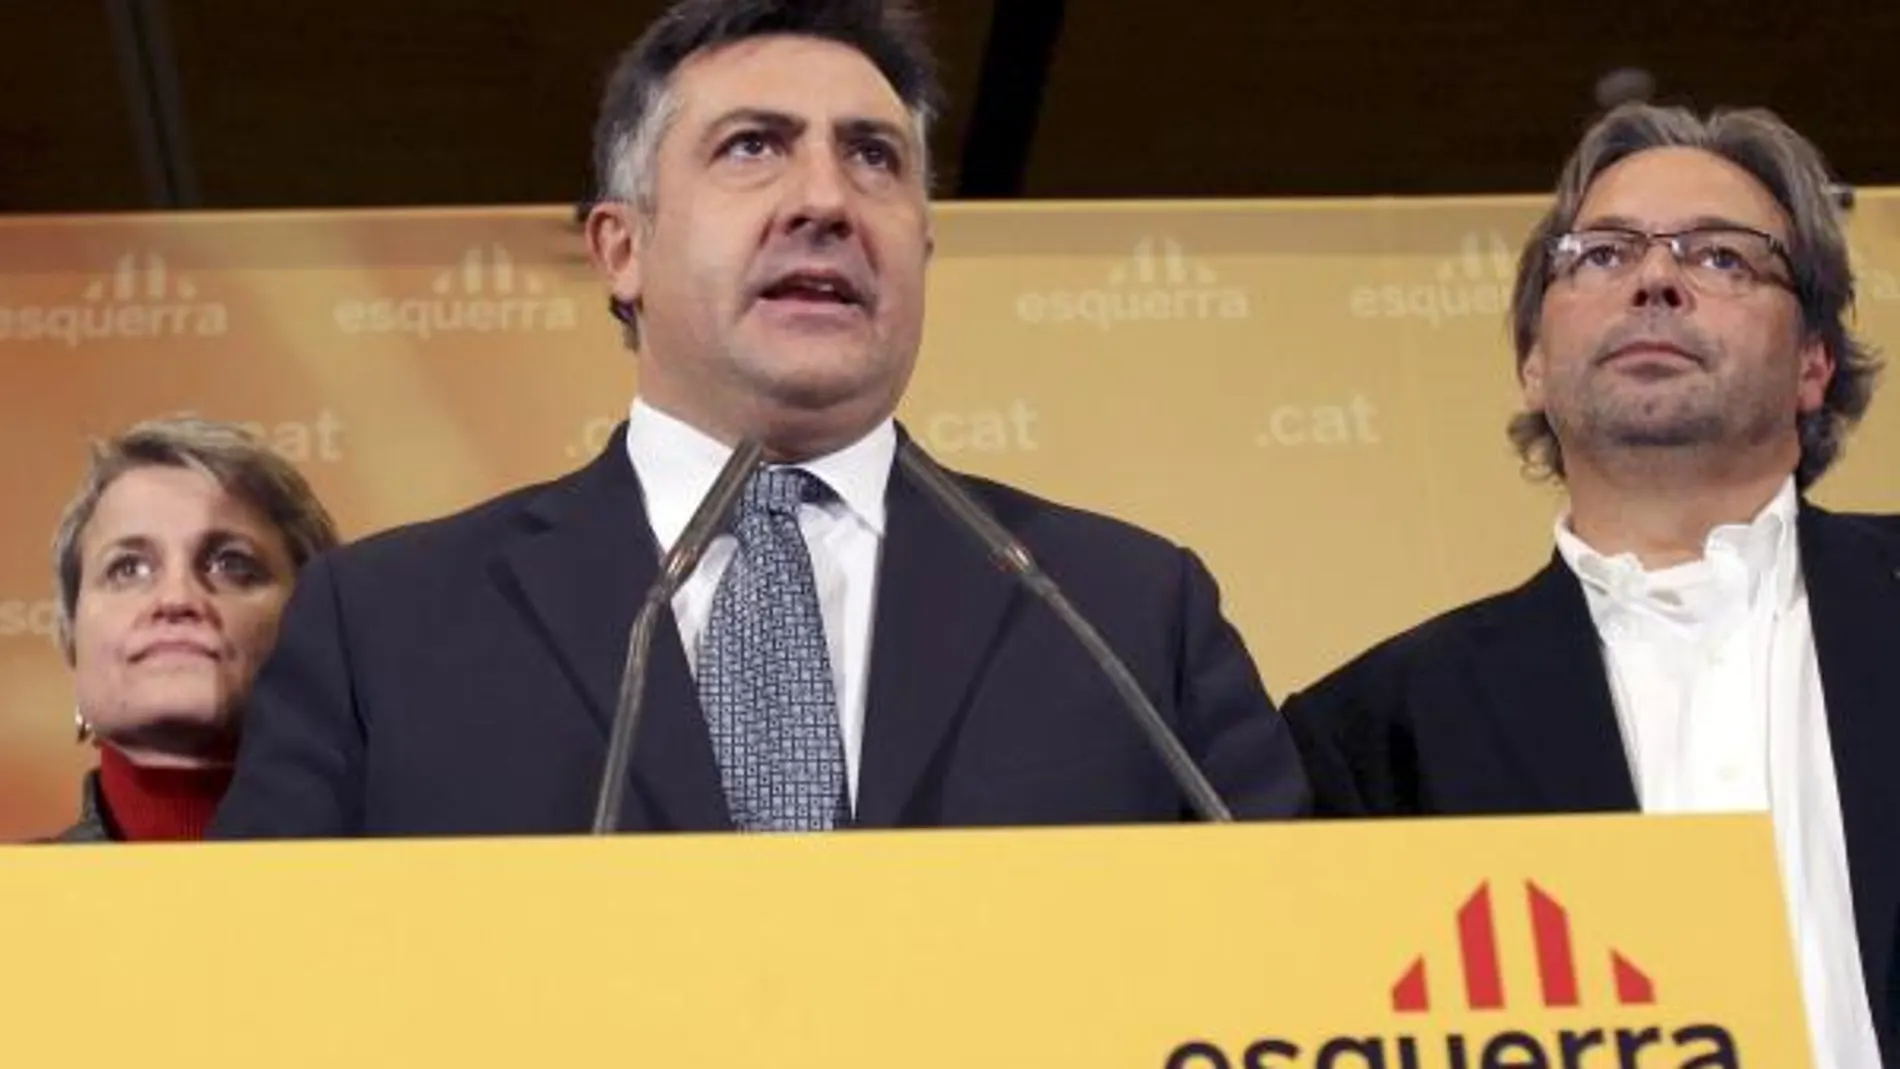 Puigcercós, líder de ERC, ha reconocido el fracaso de su partido